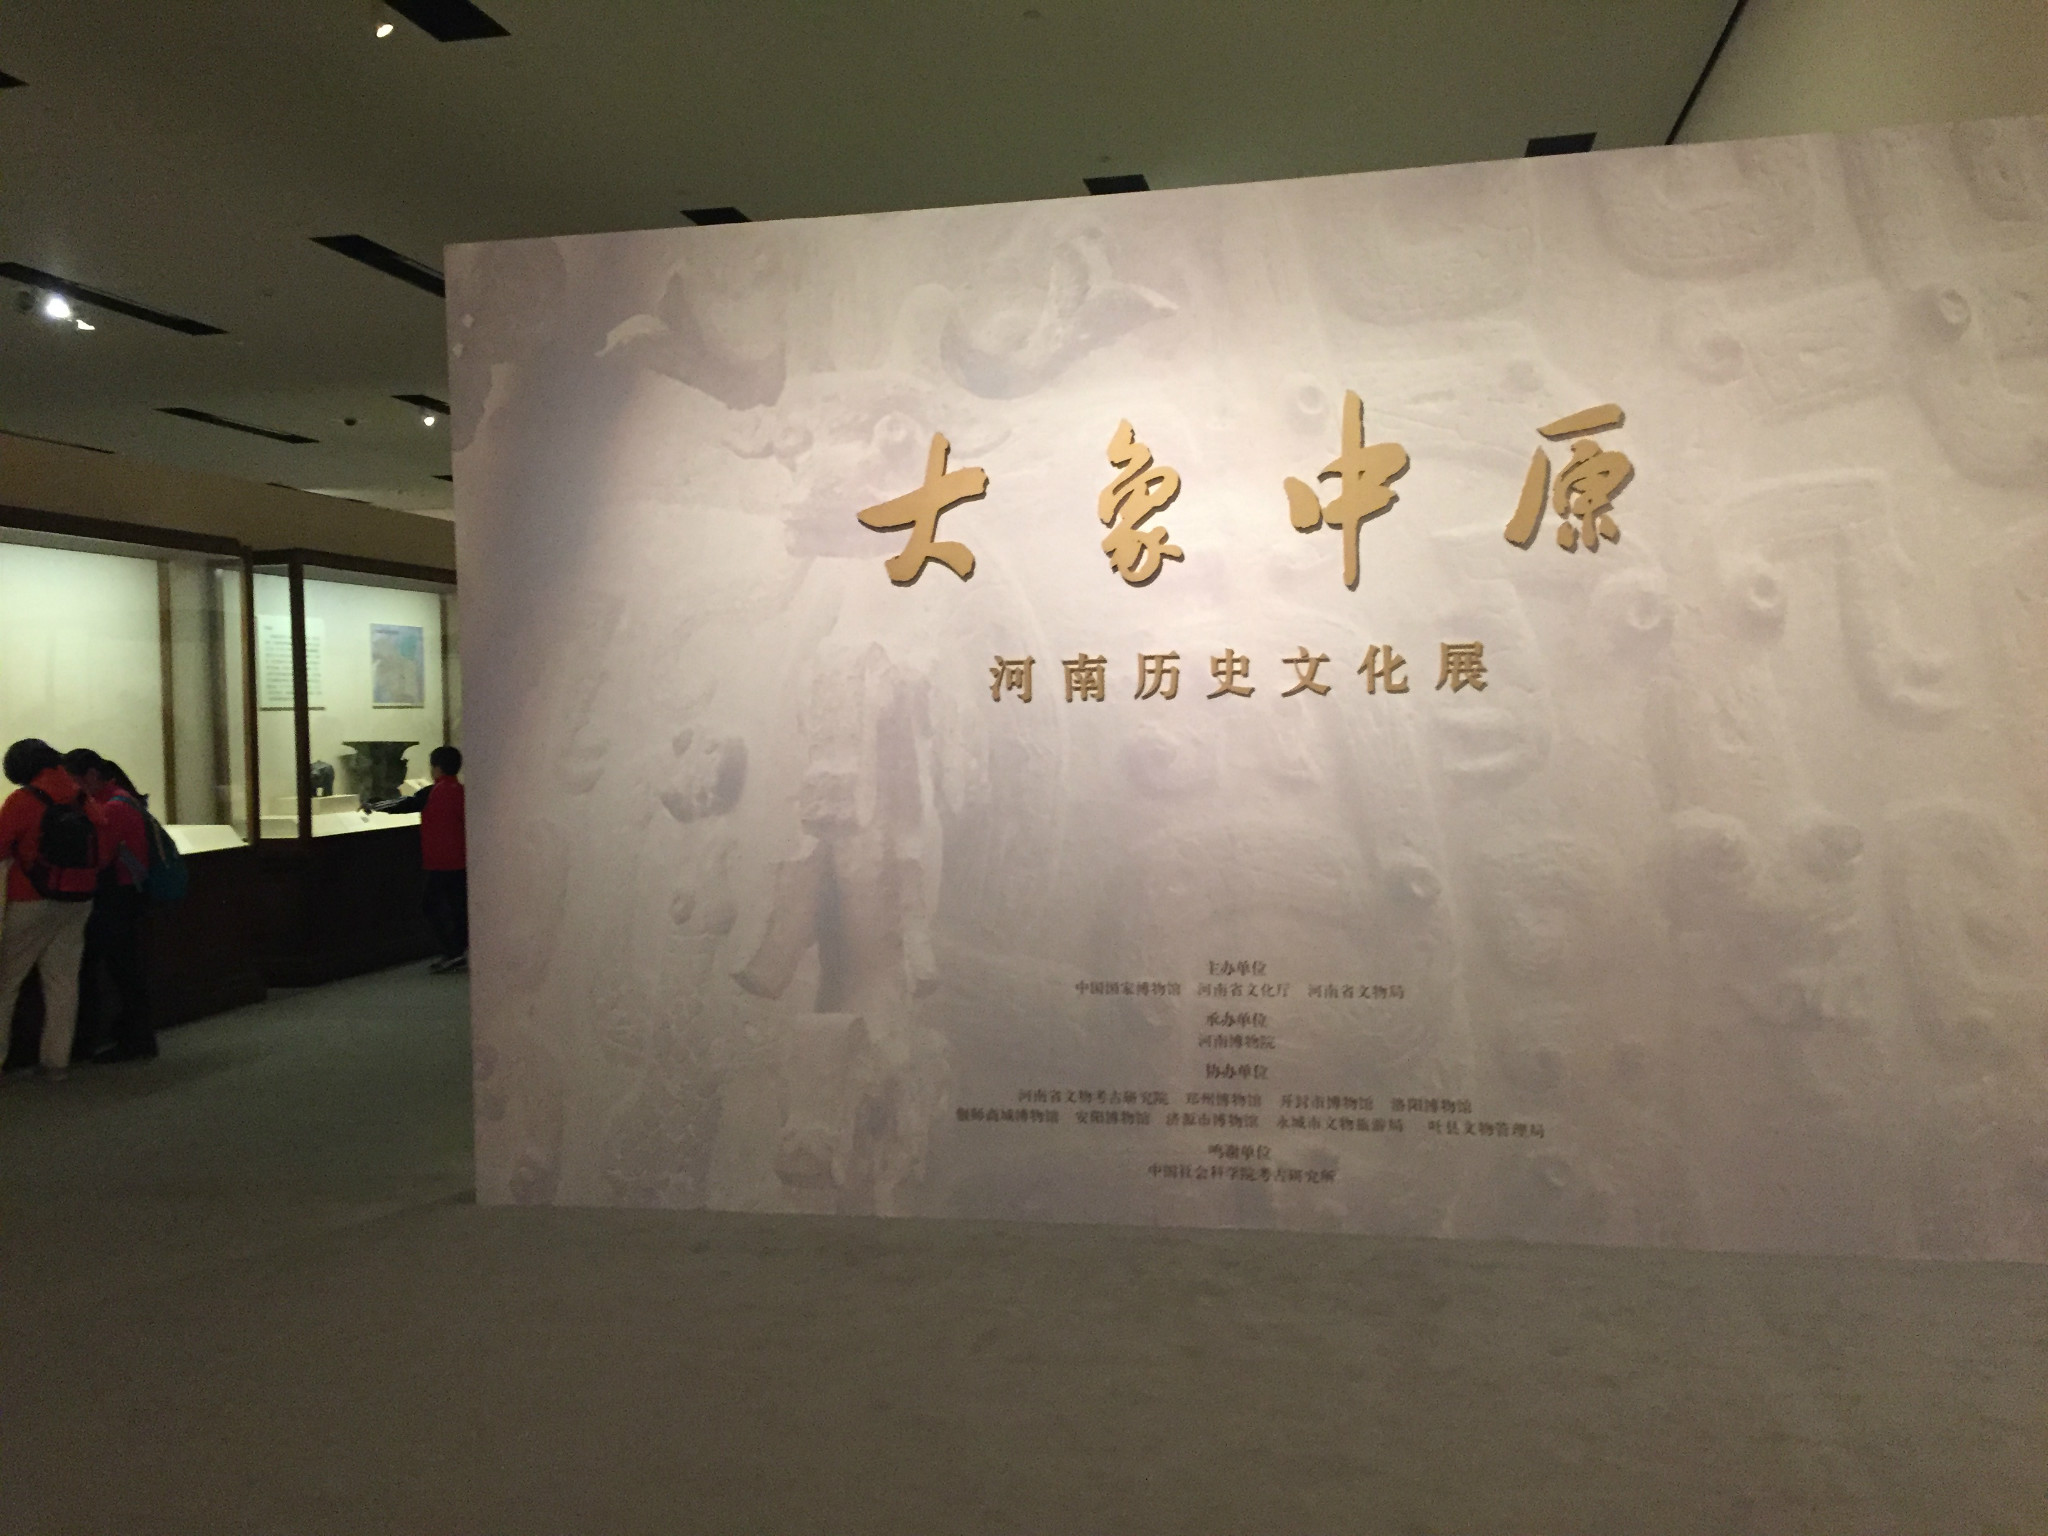 转遍北京博物馆#——中国国家博物馆——记录历史变迁,鉴证友好邻邦